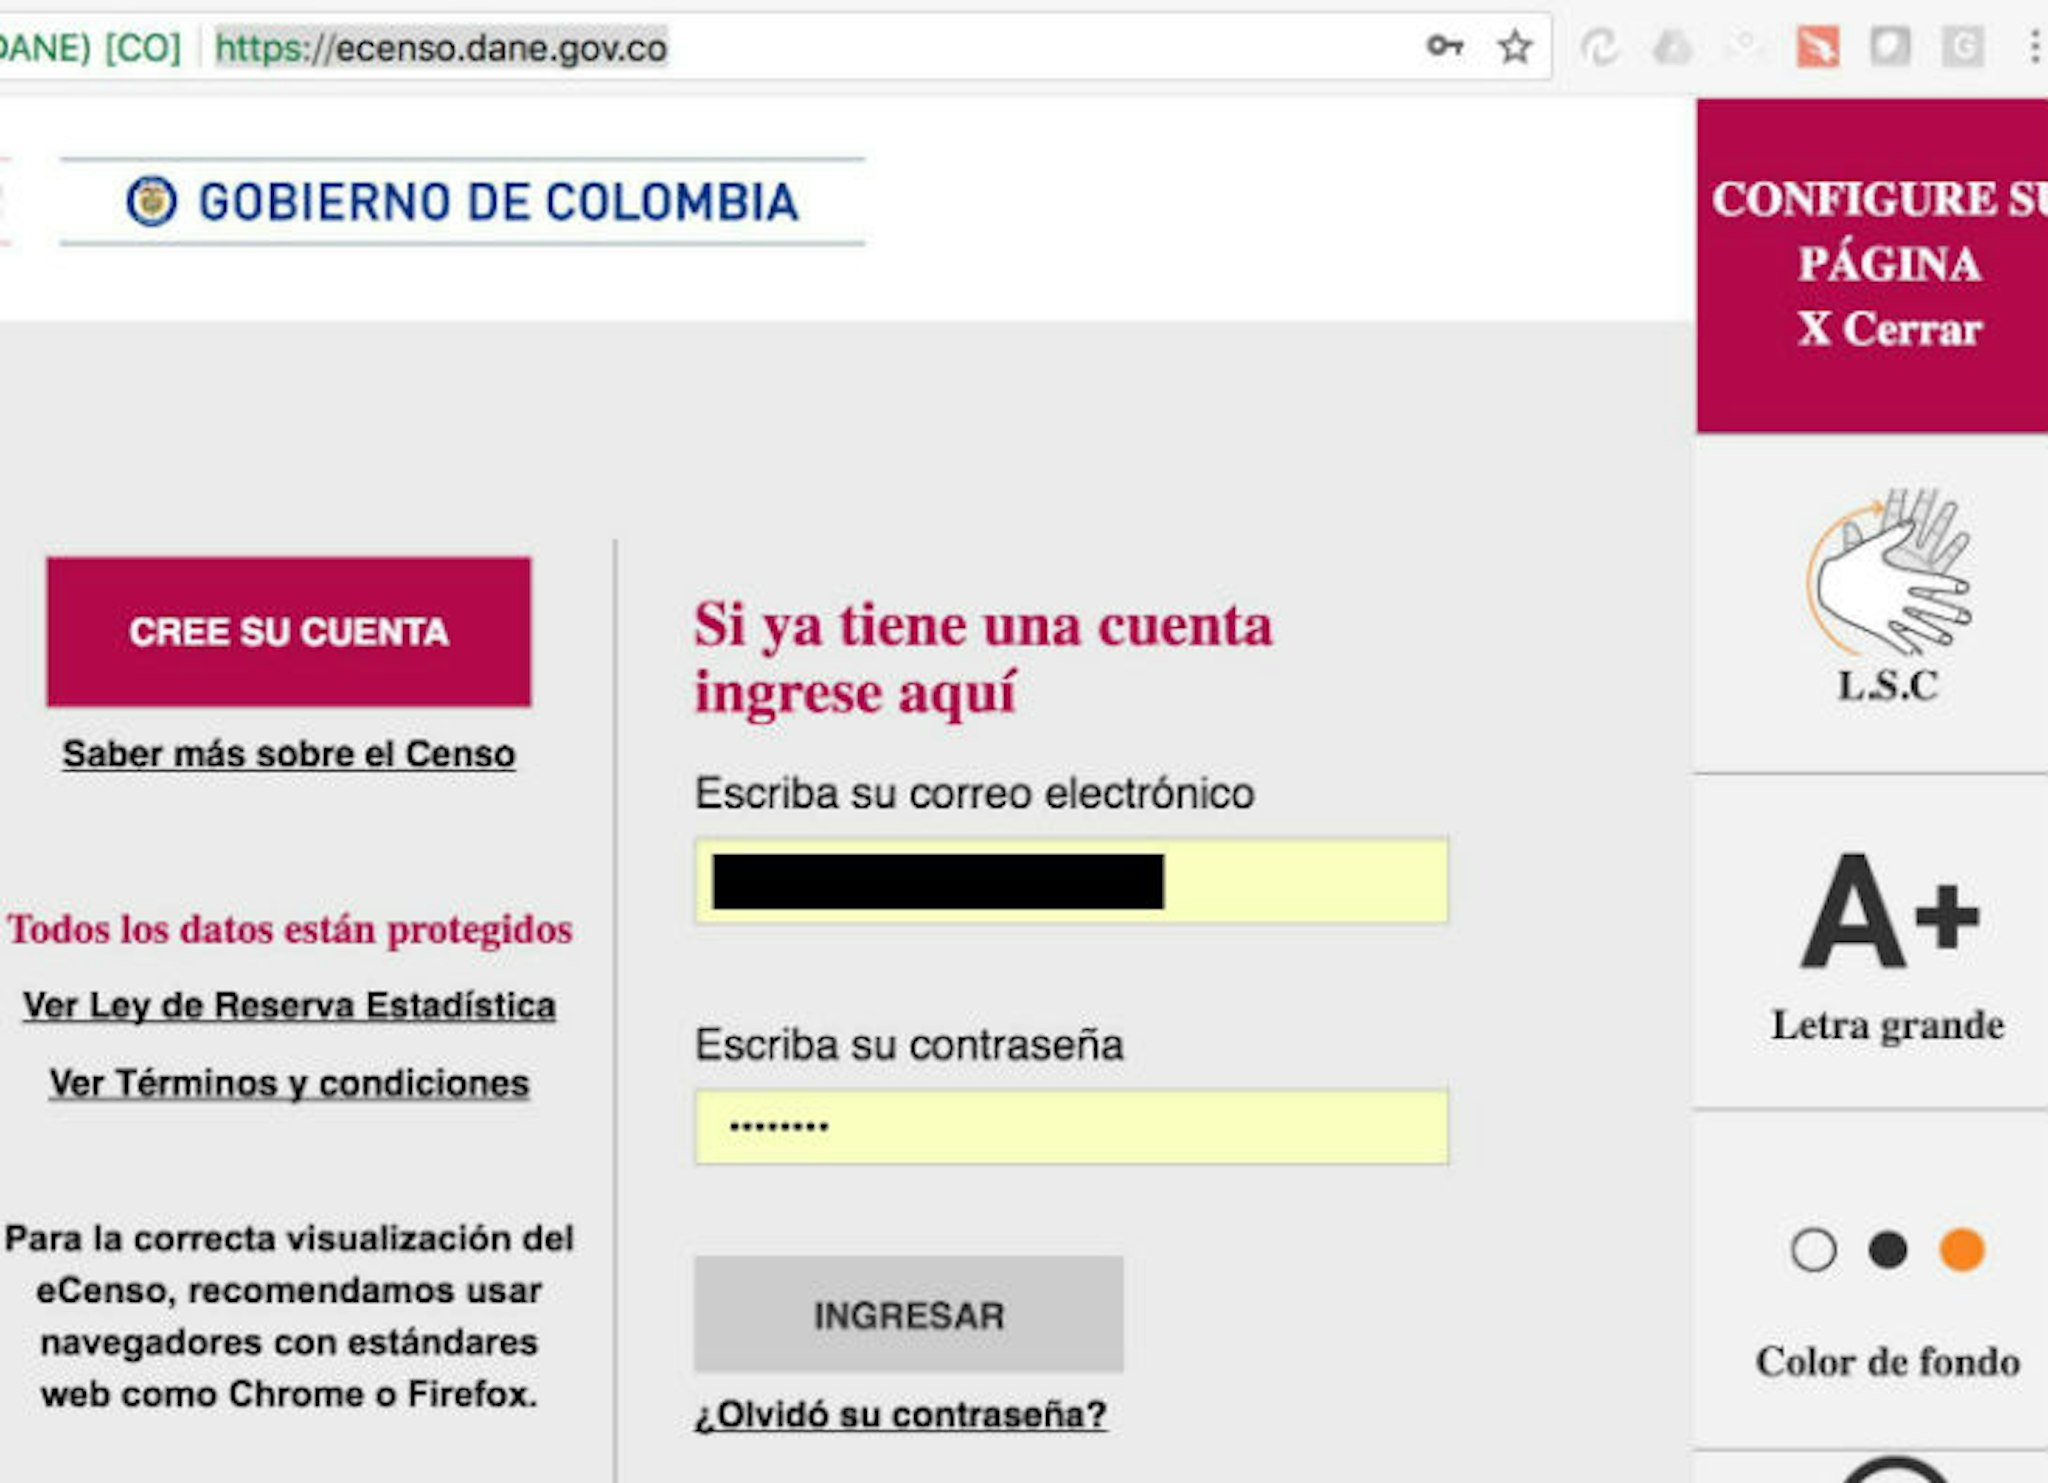 Image El paso a paso del censo virtual 2018 